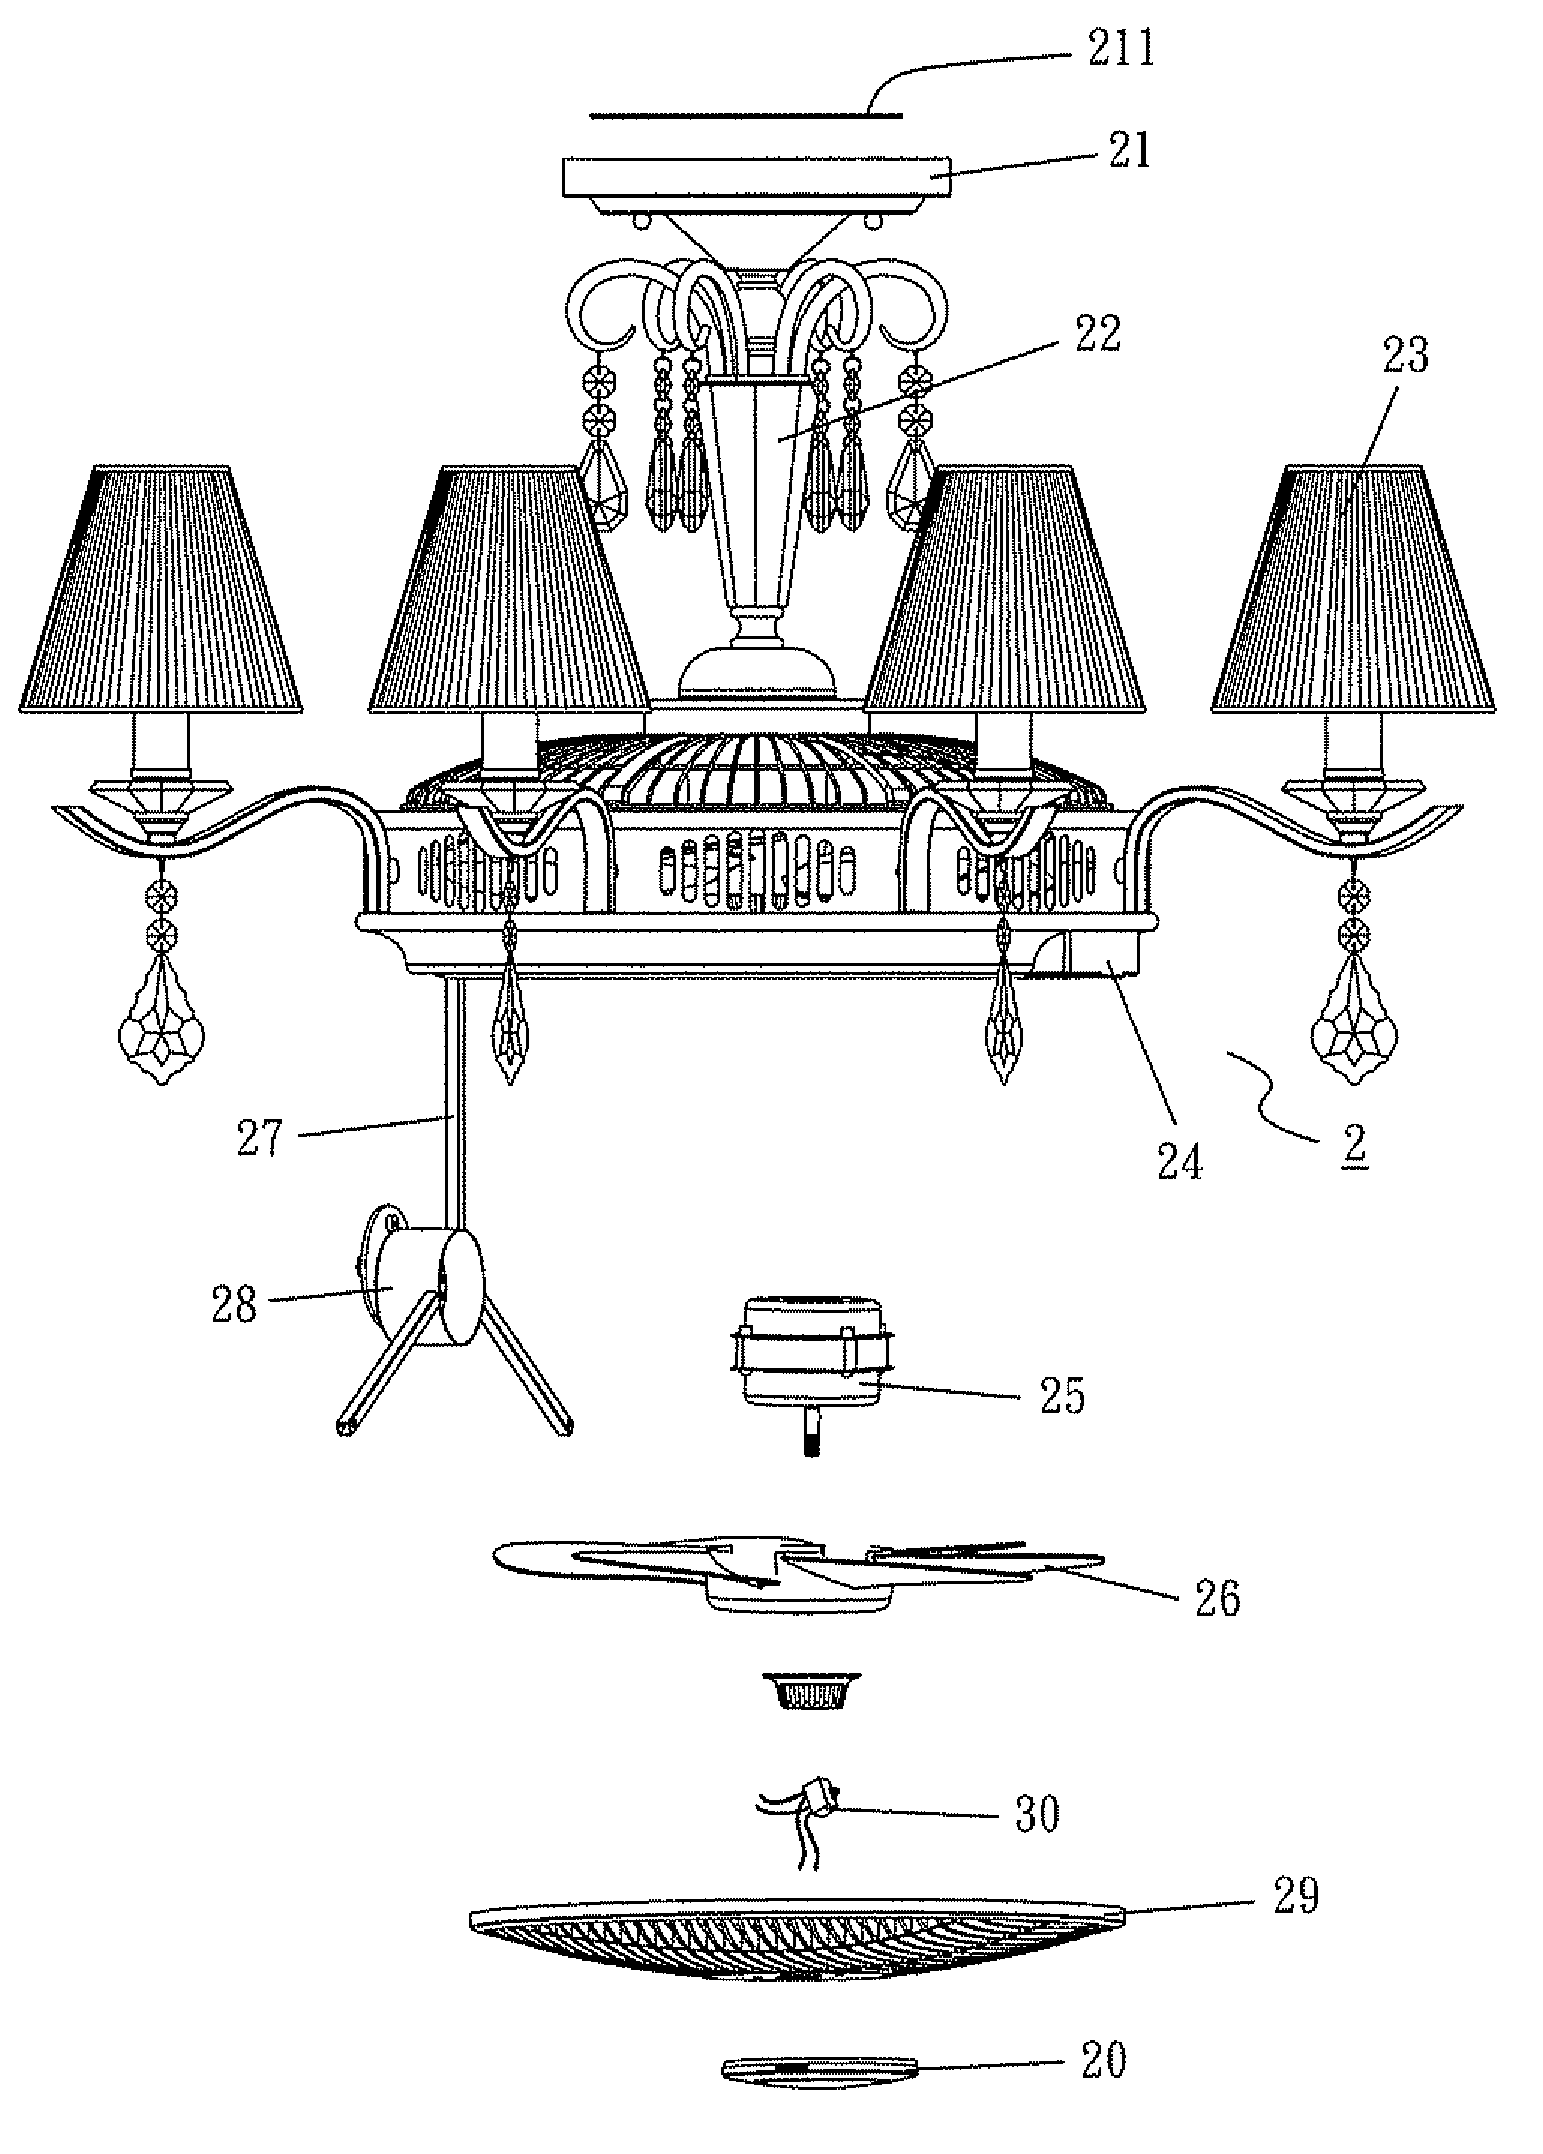 Fan light apparatus